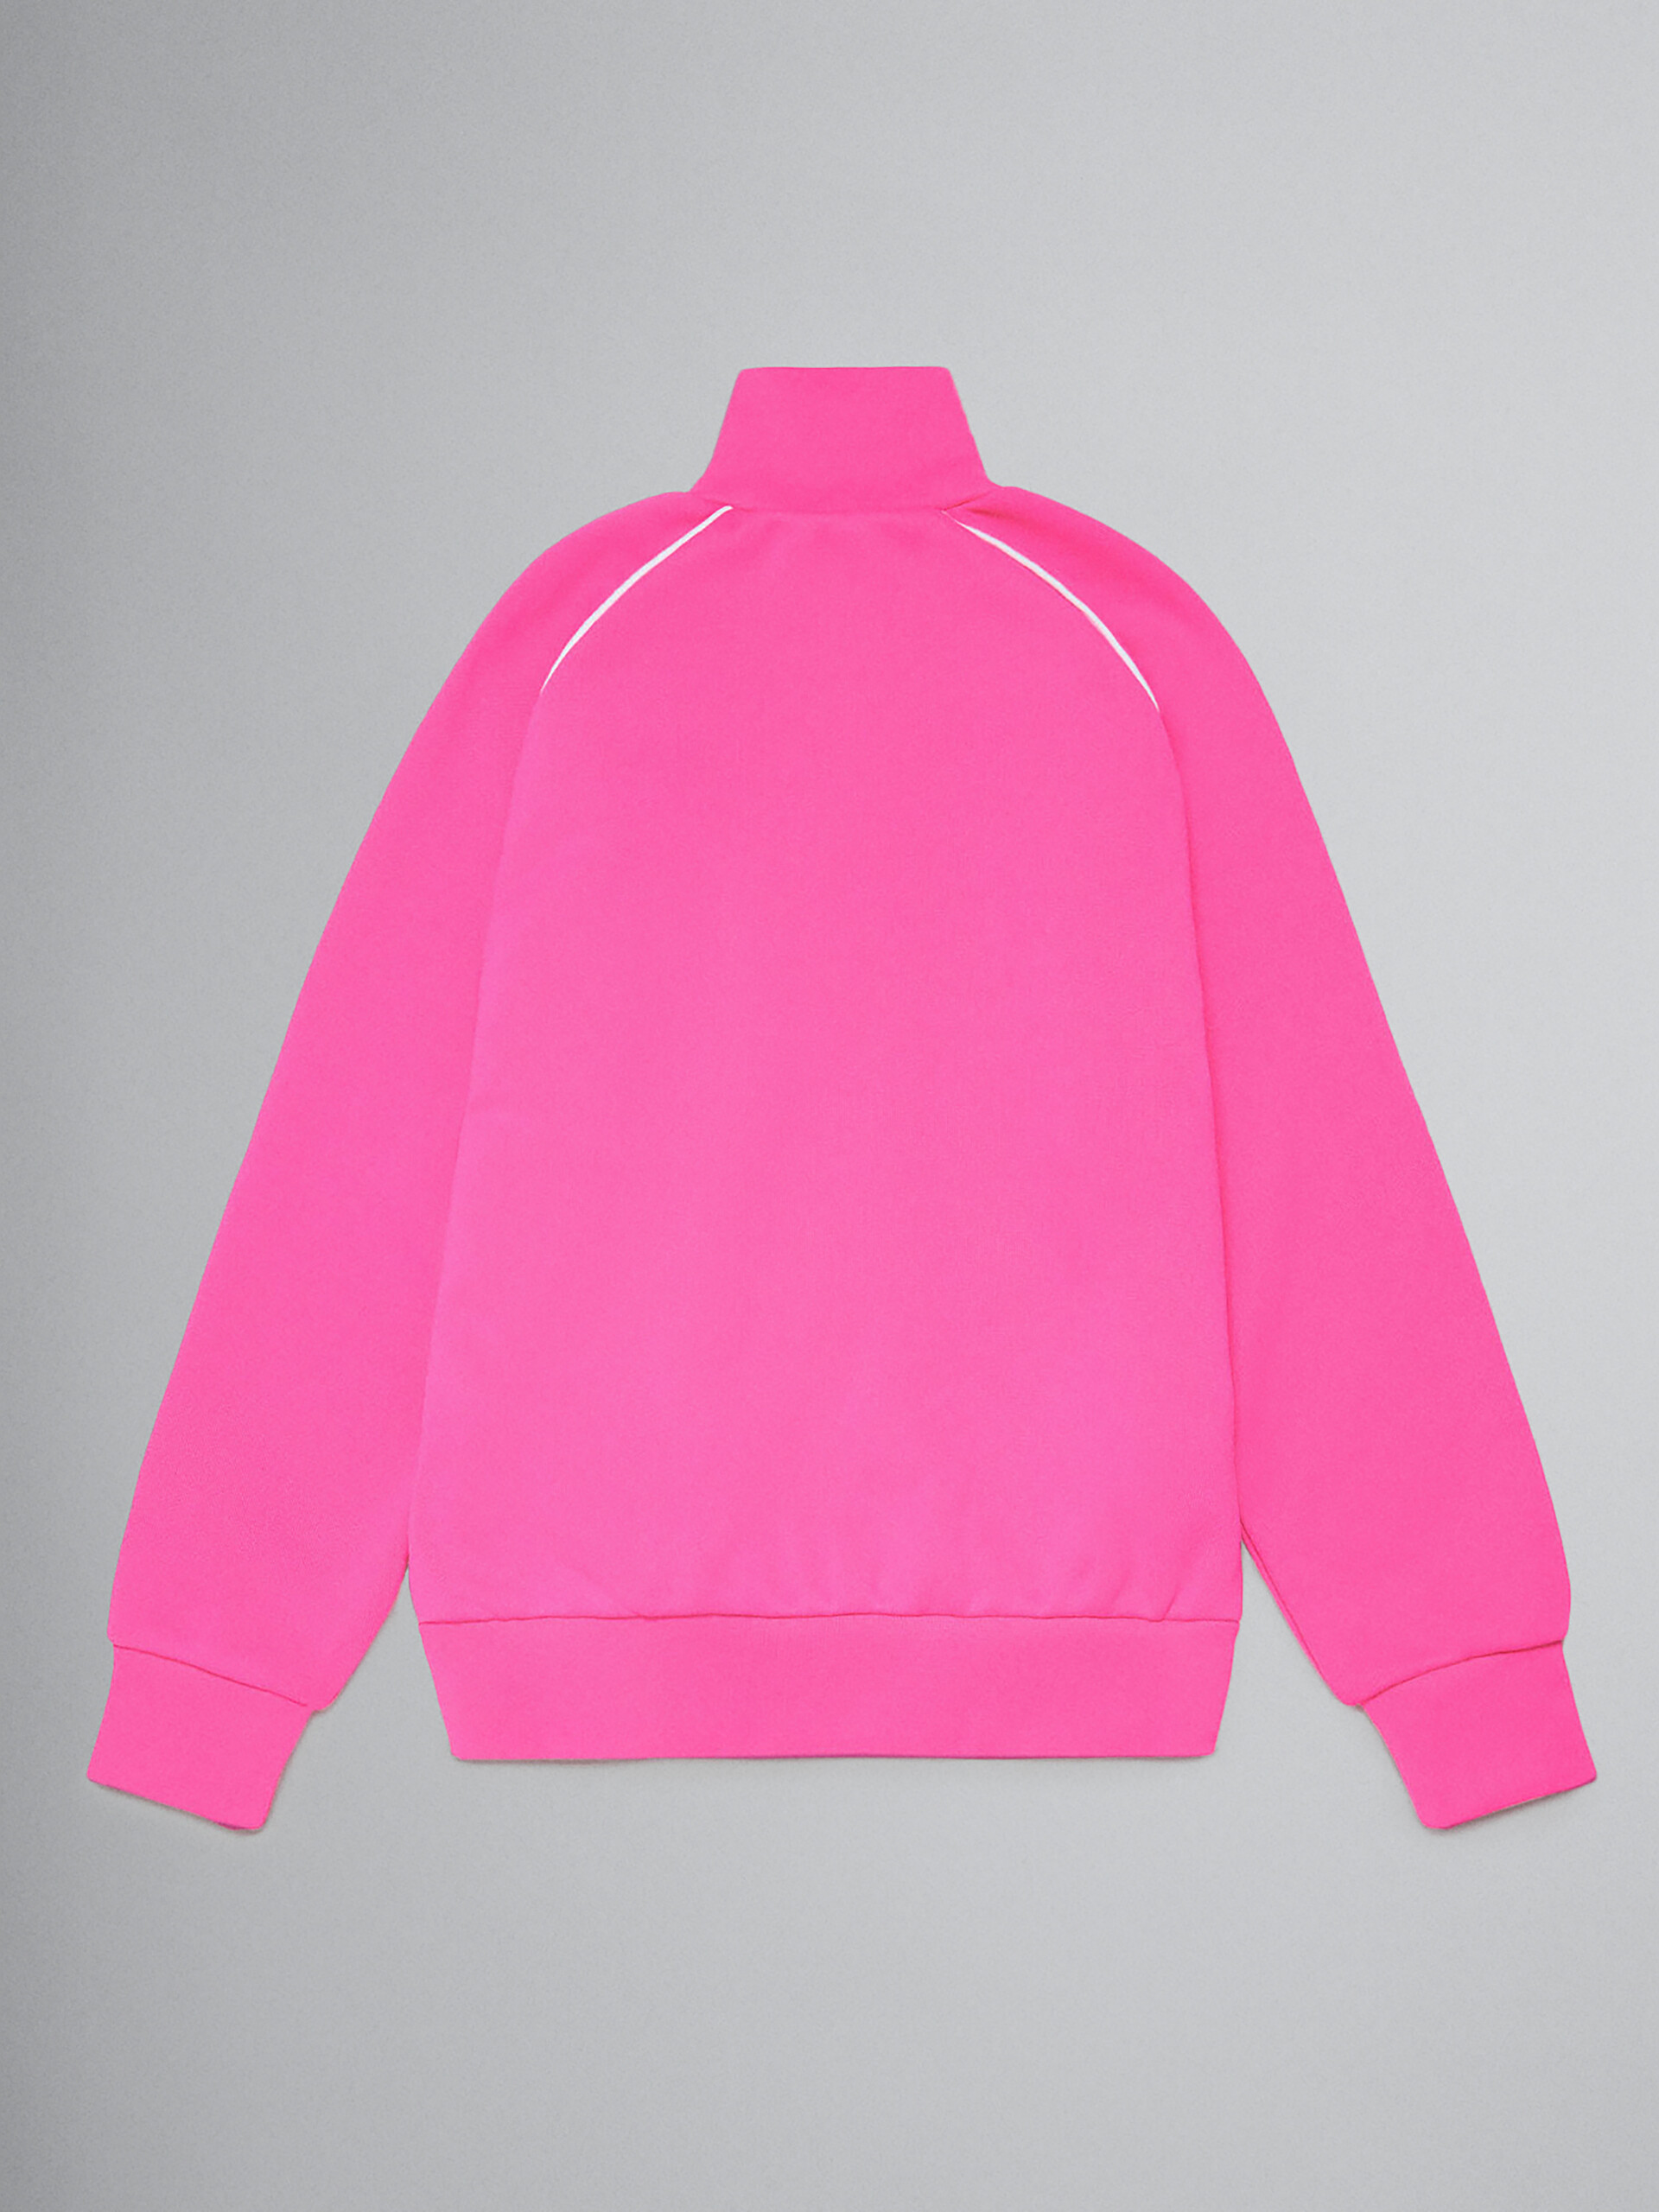 ピンク テクニカルファブリック製スウェットシャツ ブラッシュロゴ入り - ニット - Image 2